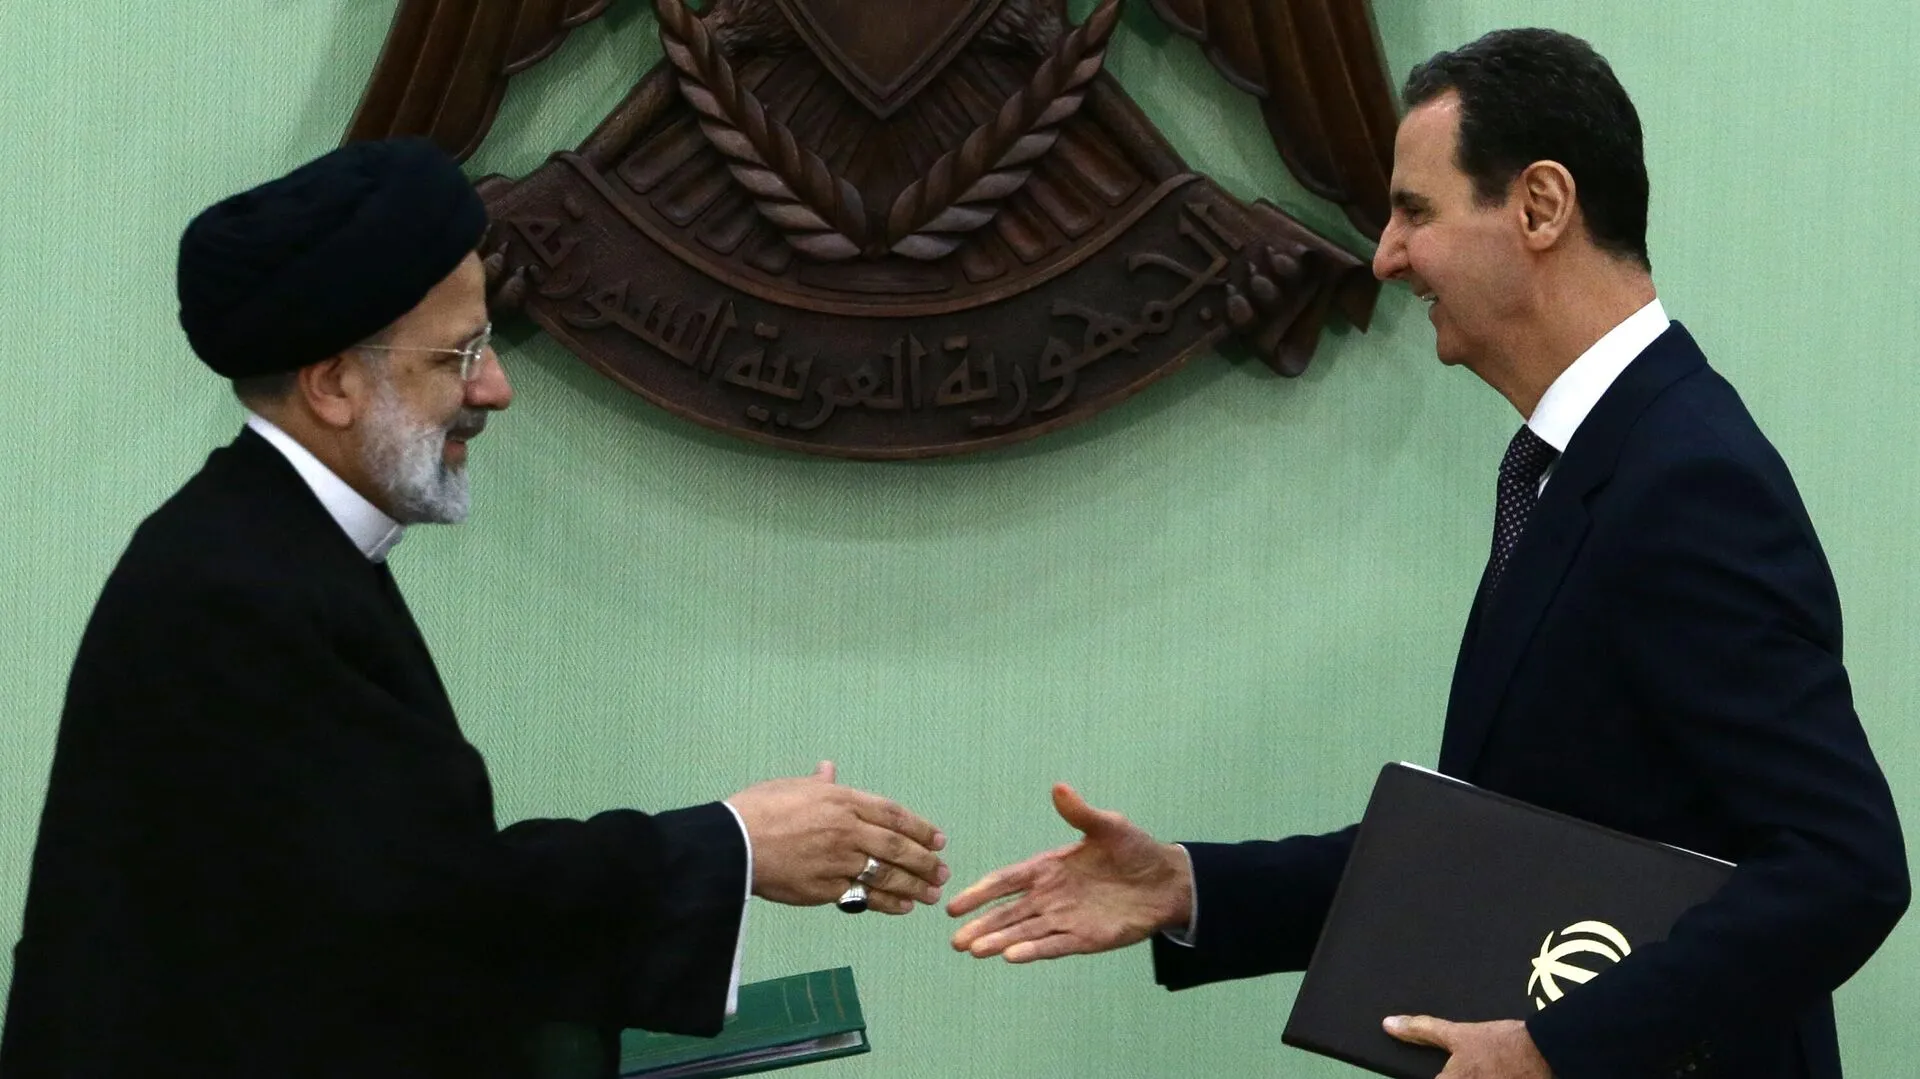 وثائق مسربة تكشف عن عجز نظام الأسد عن سداد ديون إيران وهيمنة الأخيرة في سوريا